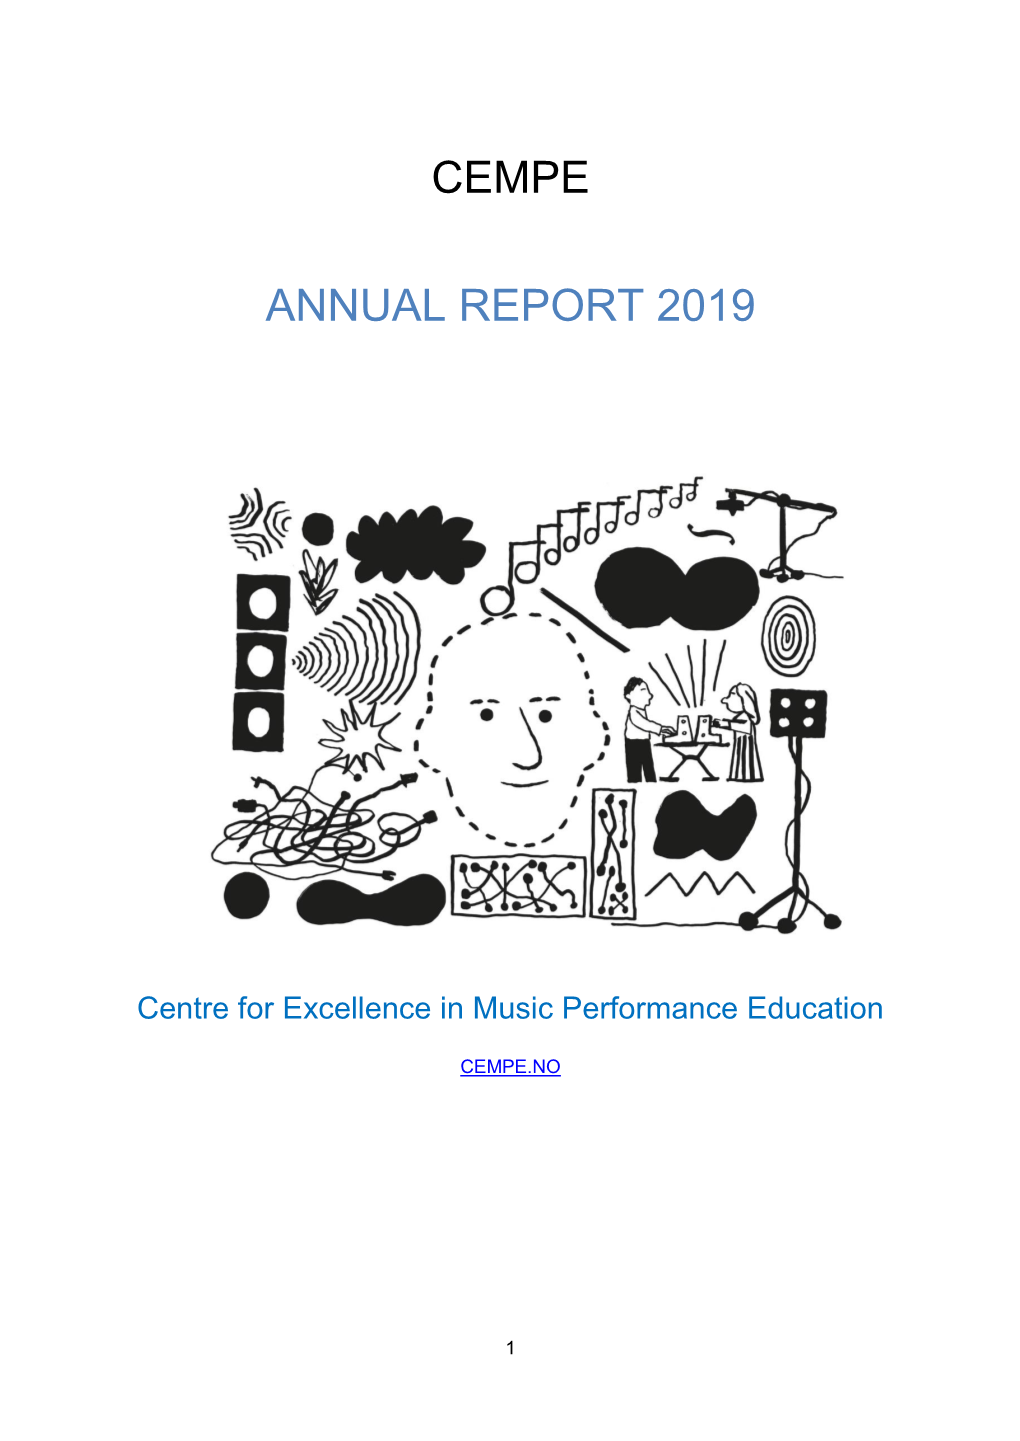 CEMPE Annual Report 2019